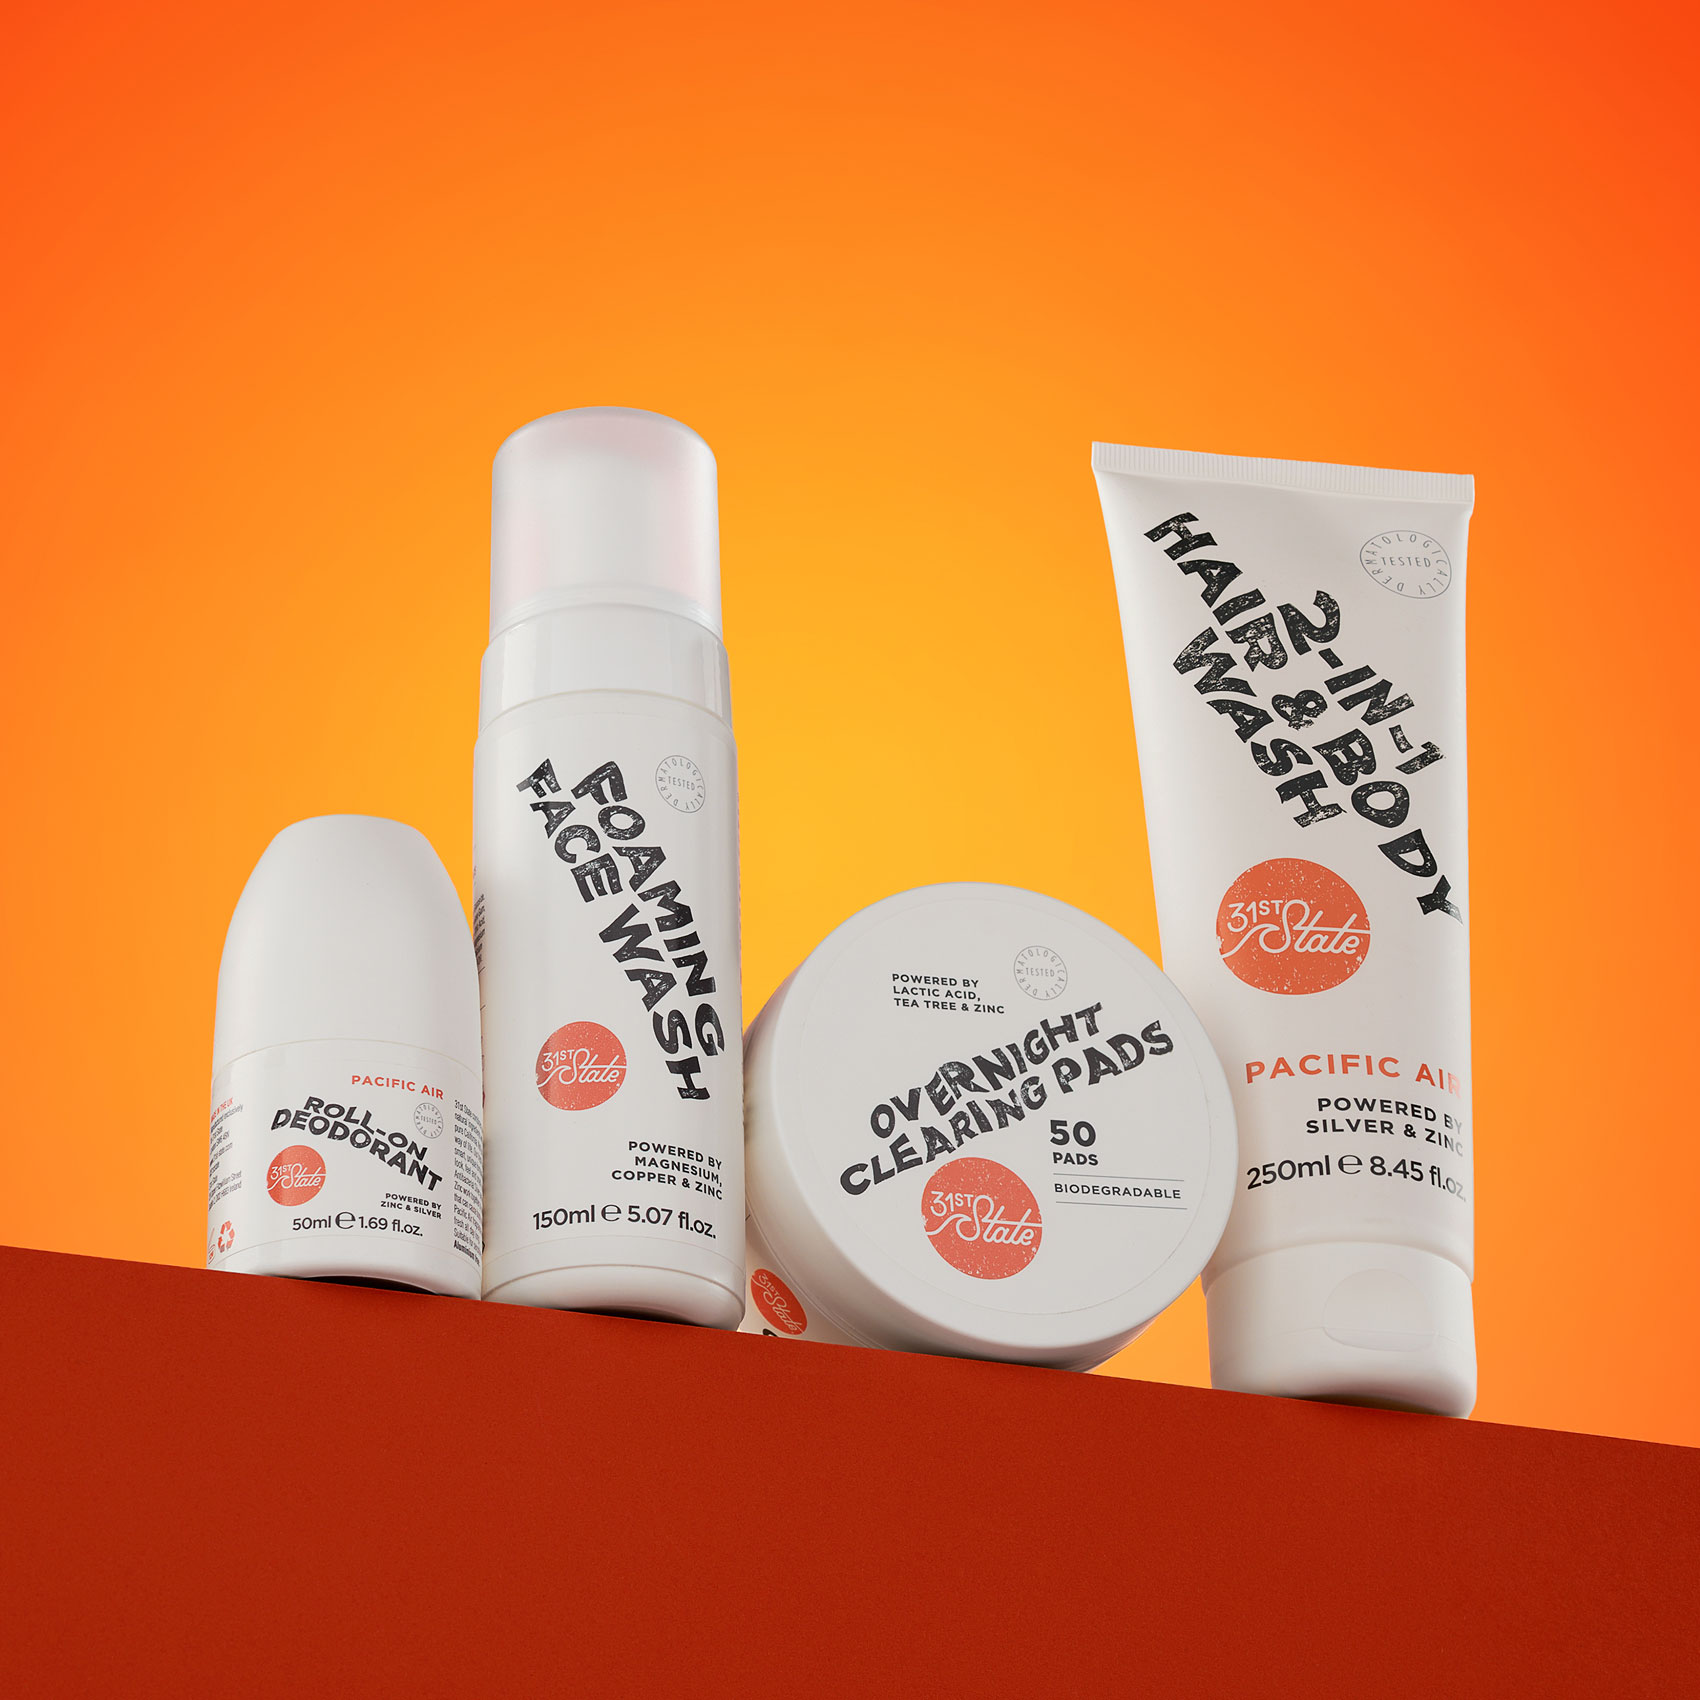 Set of four skin care products balanced on ledge of orange set